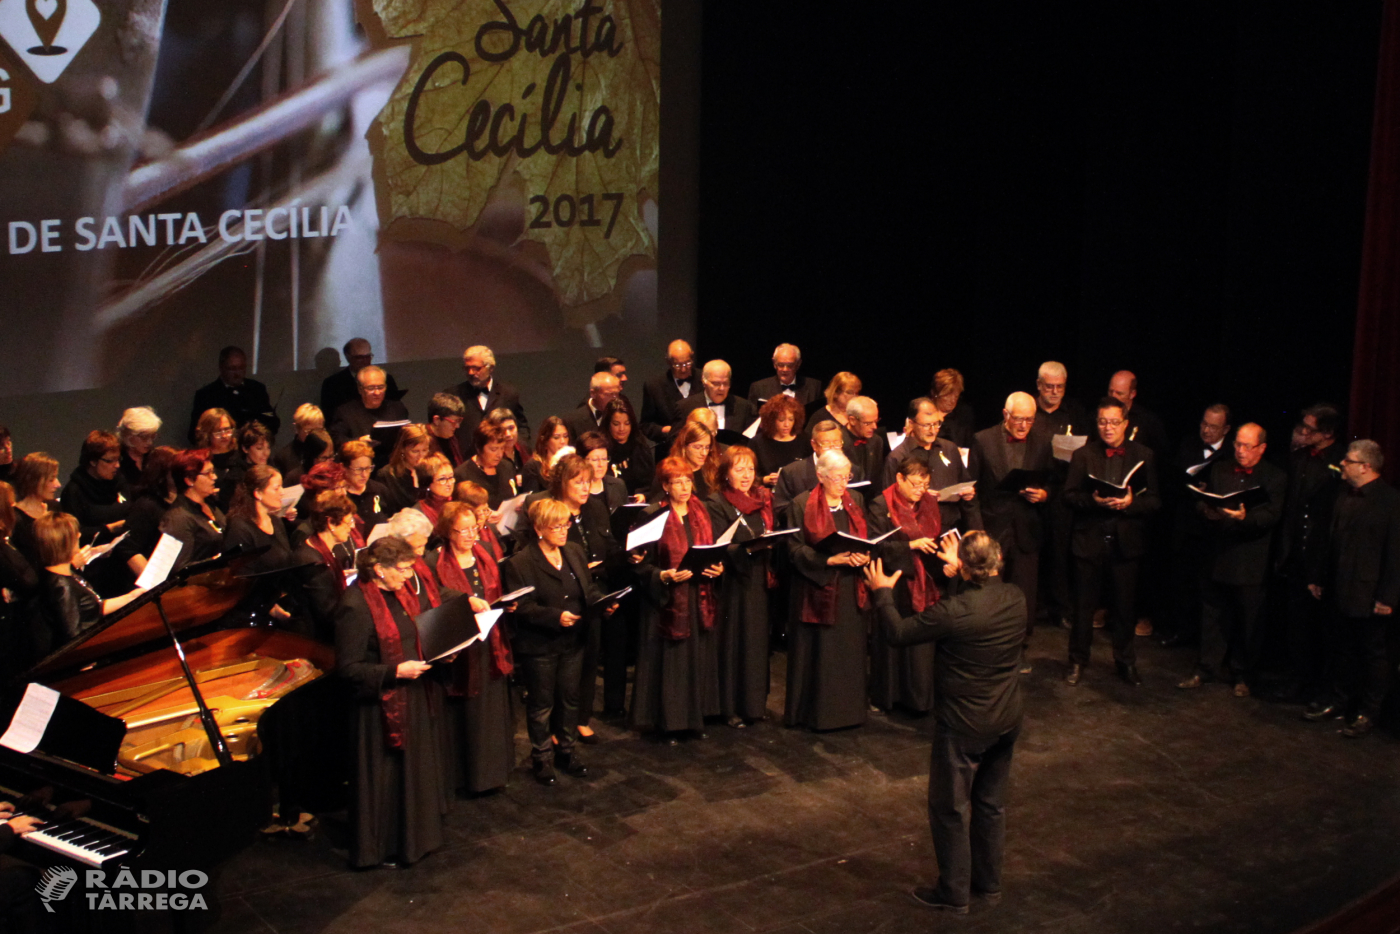 Tàrrega celebrarà el tradicional concert de Santa Cecília el diumenge 18 de novembre a benefici del Magatzem d’Aliments Solidaris